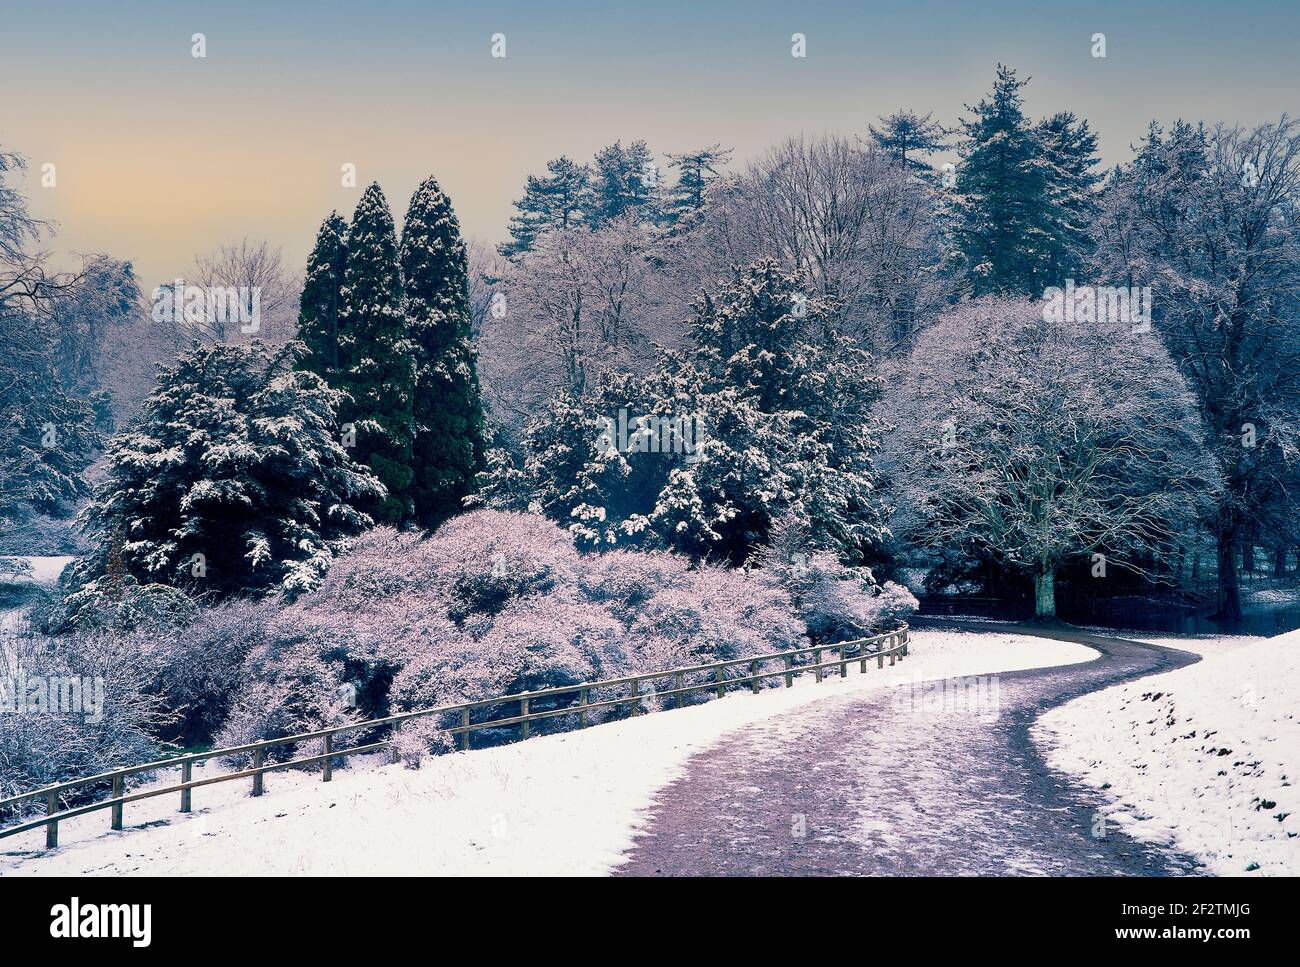 Una escena de invierno en el lado inglés del coutryside con árboles cubierto de nieve Foto de stock